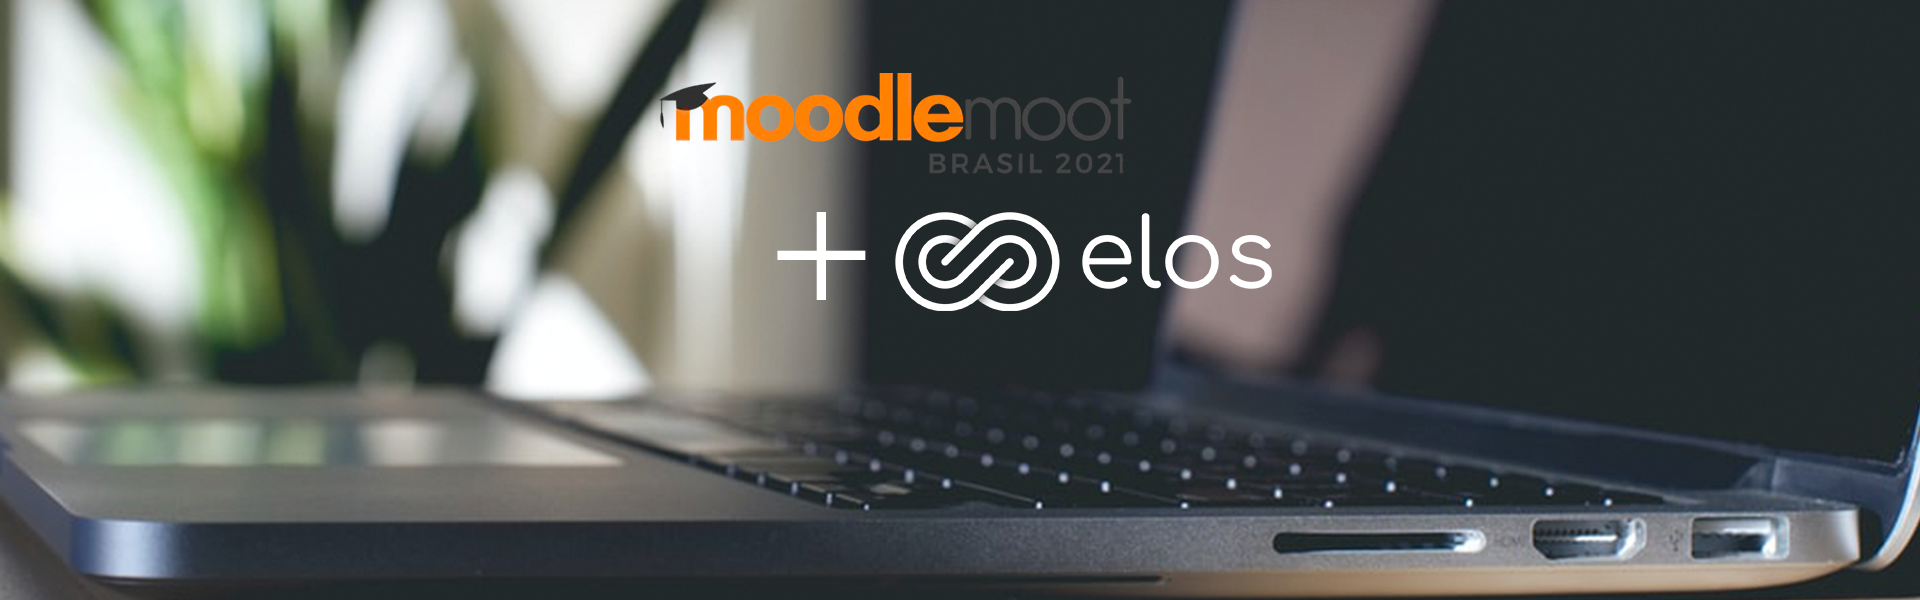 MoodleMoot 2021: Educação em um mundo remoto